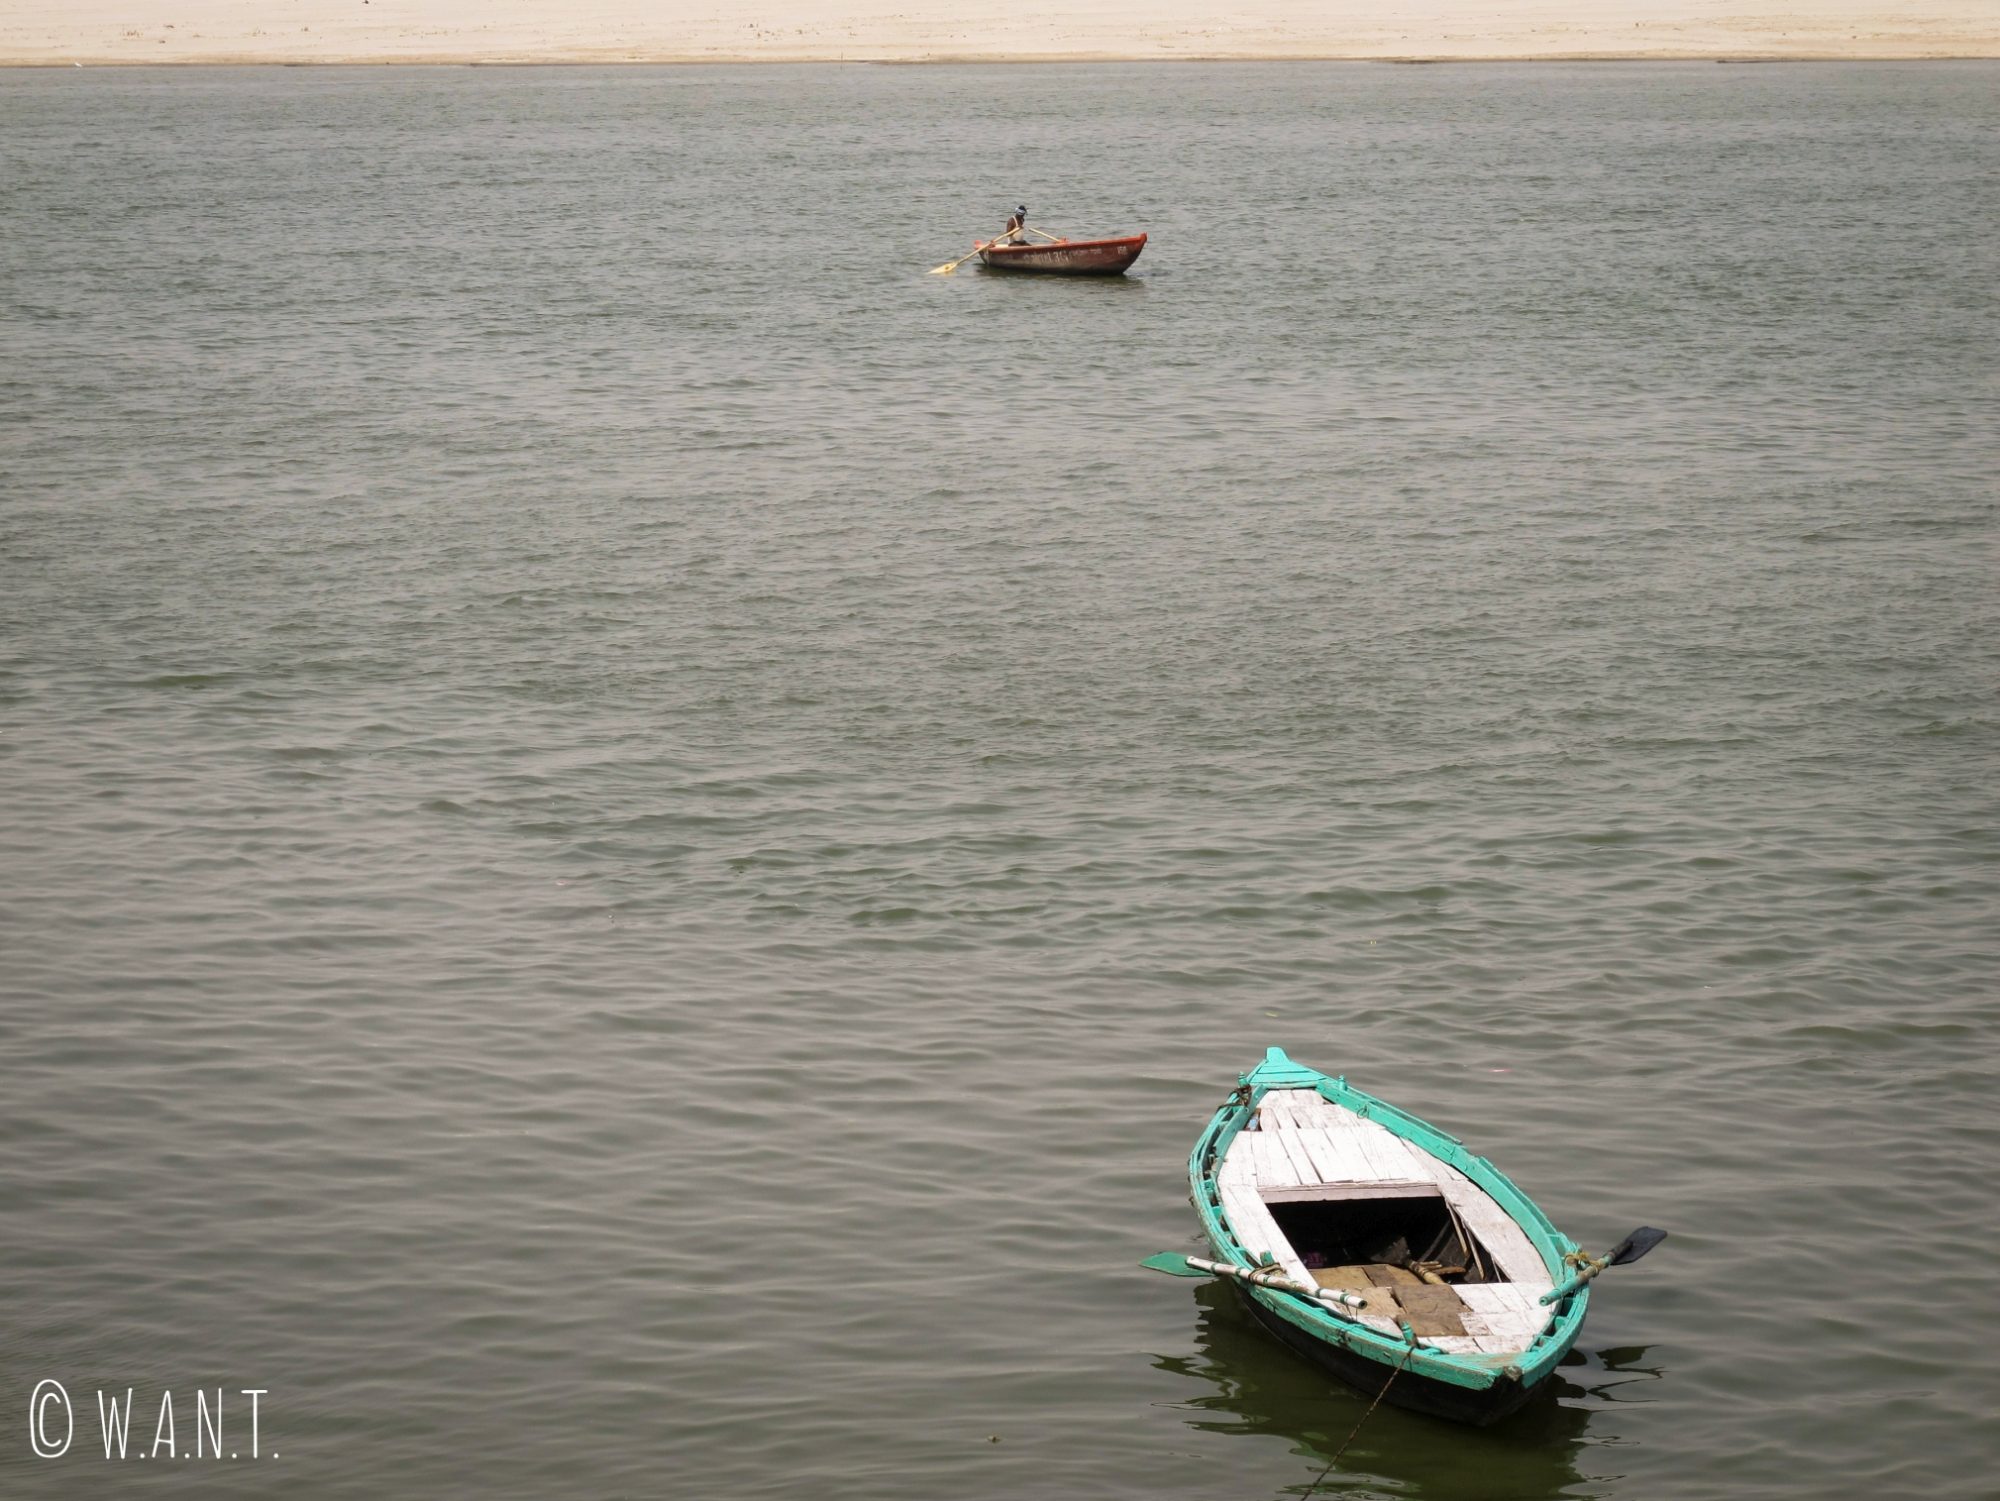 Les habitants de Varanasi utilisent leur barque pour se déplacer sur le Gange et y pêcher